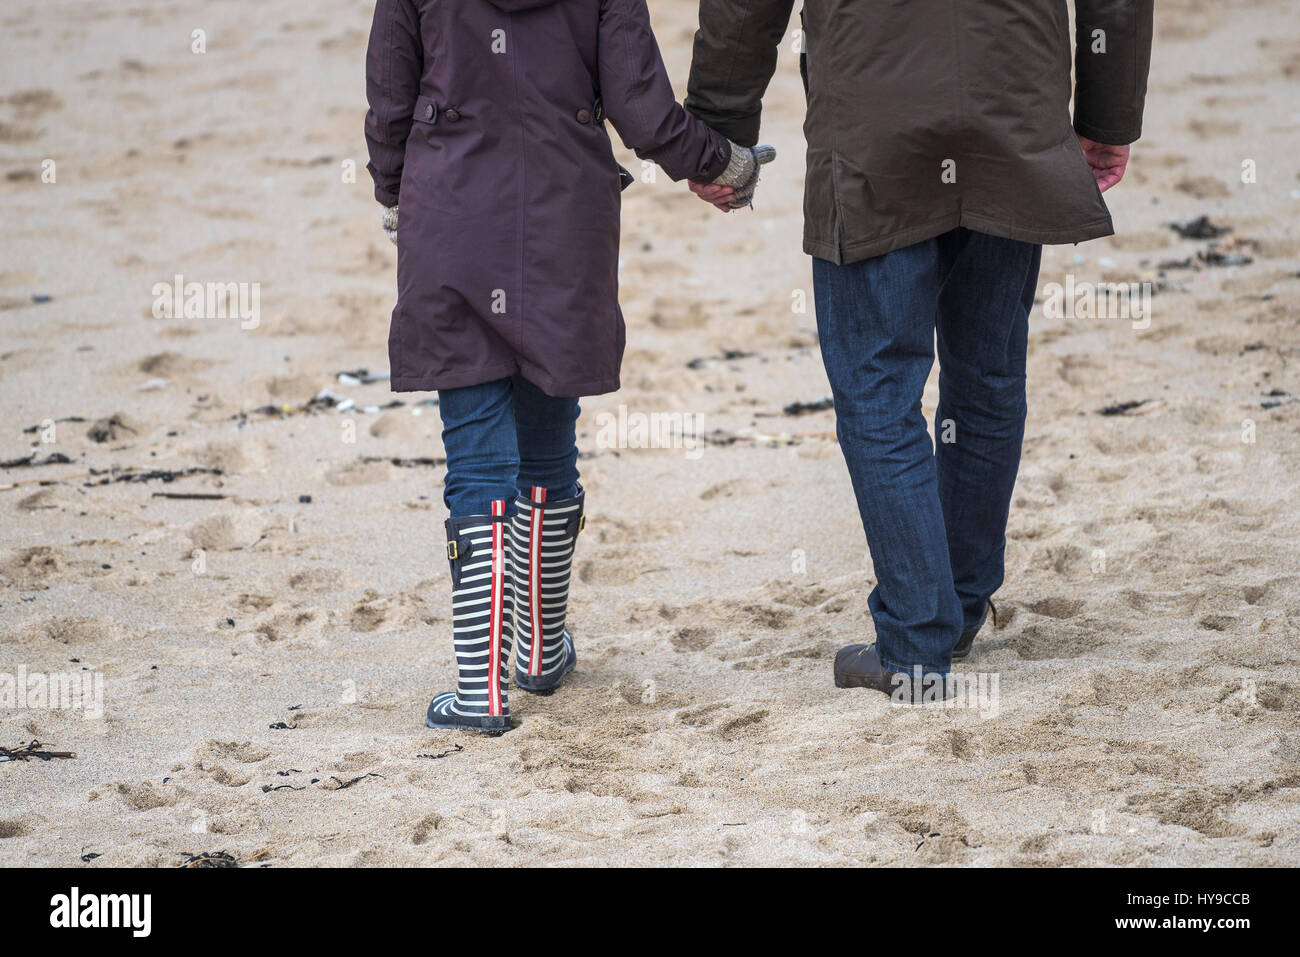 Giovane Holding Hands Walking affetto rapporto convivere insieme sabbia spiaggia passeggiando Foto Stock